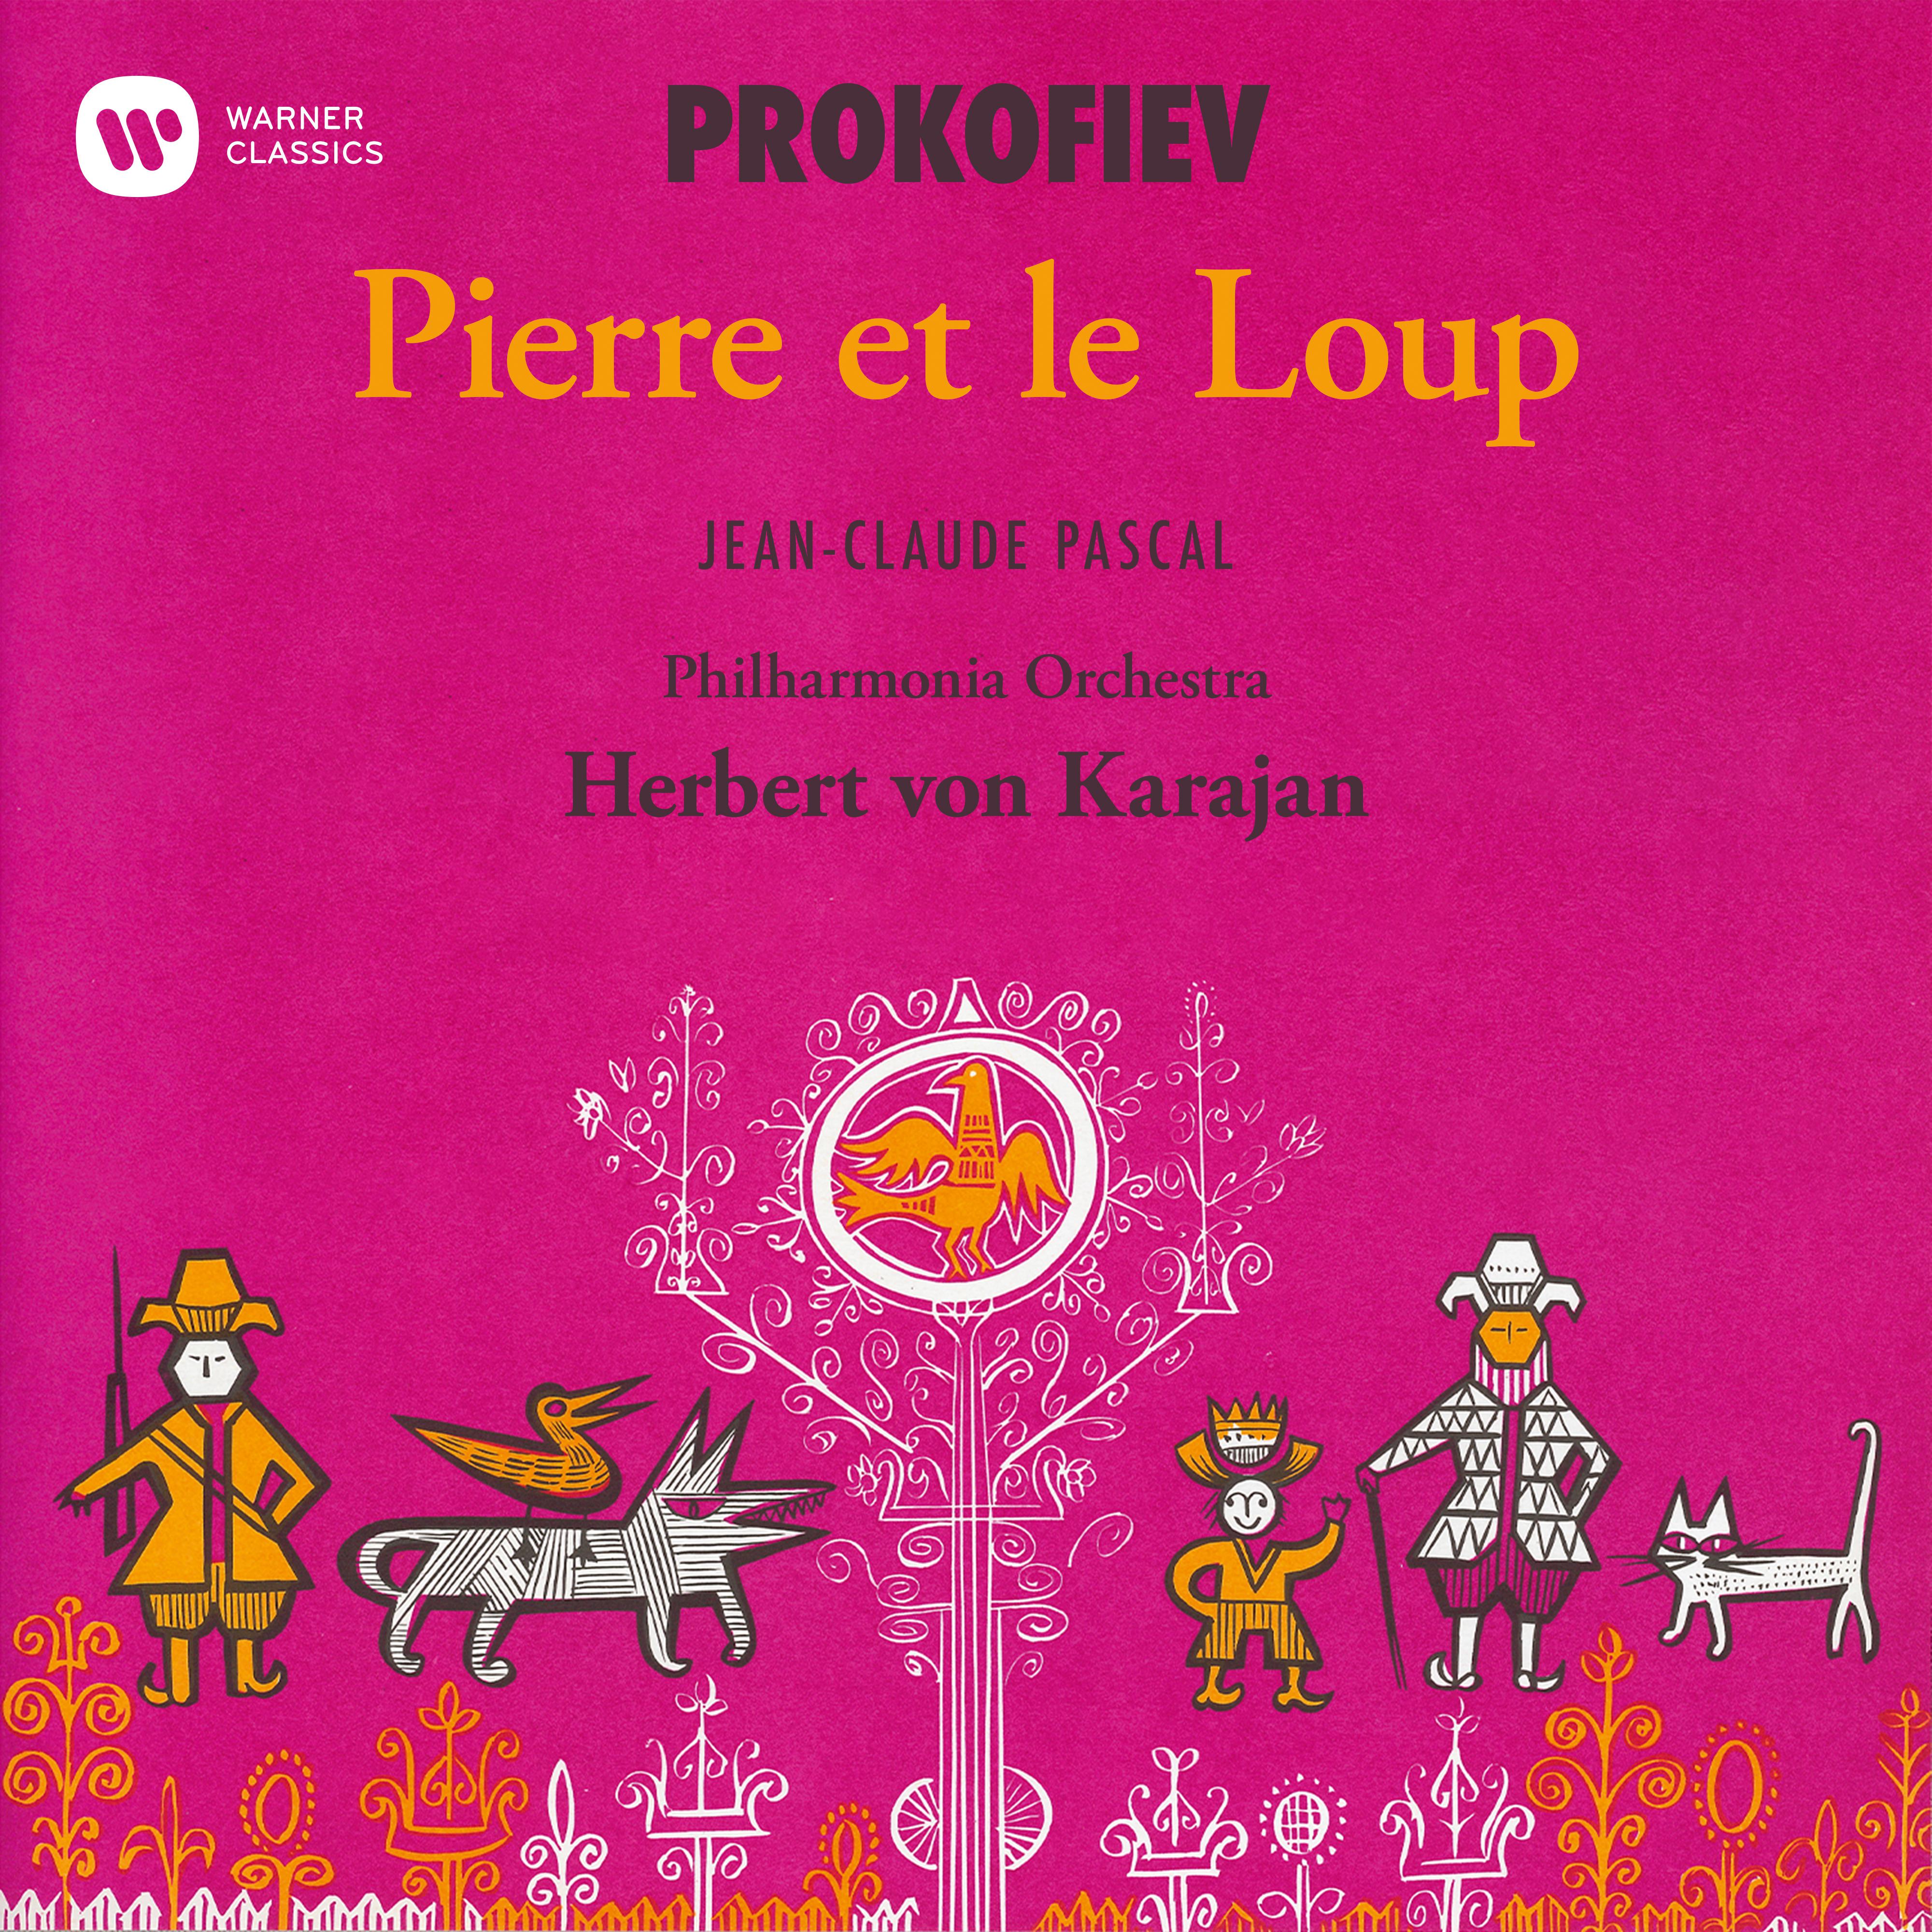 Pierre et le loup, Op. 67:Présentation des personnages avec leurs motifs musicaux